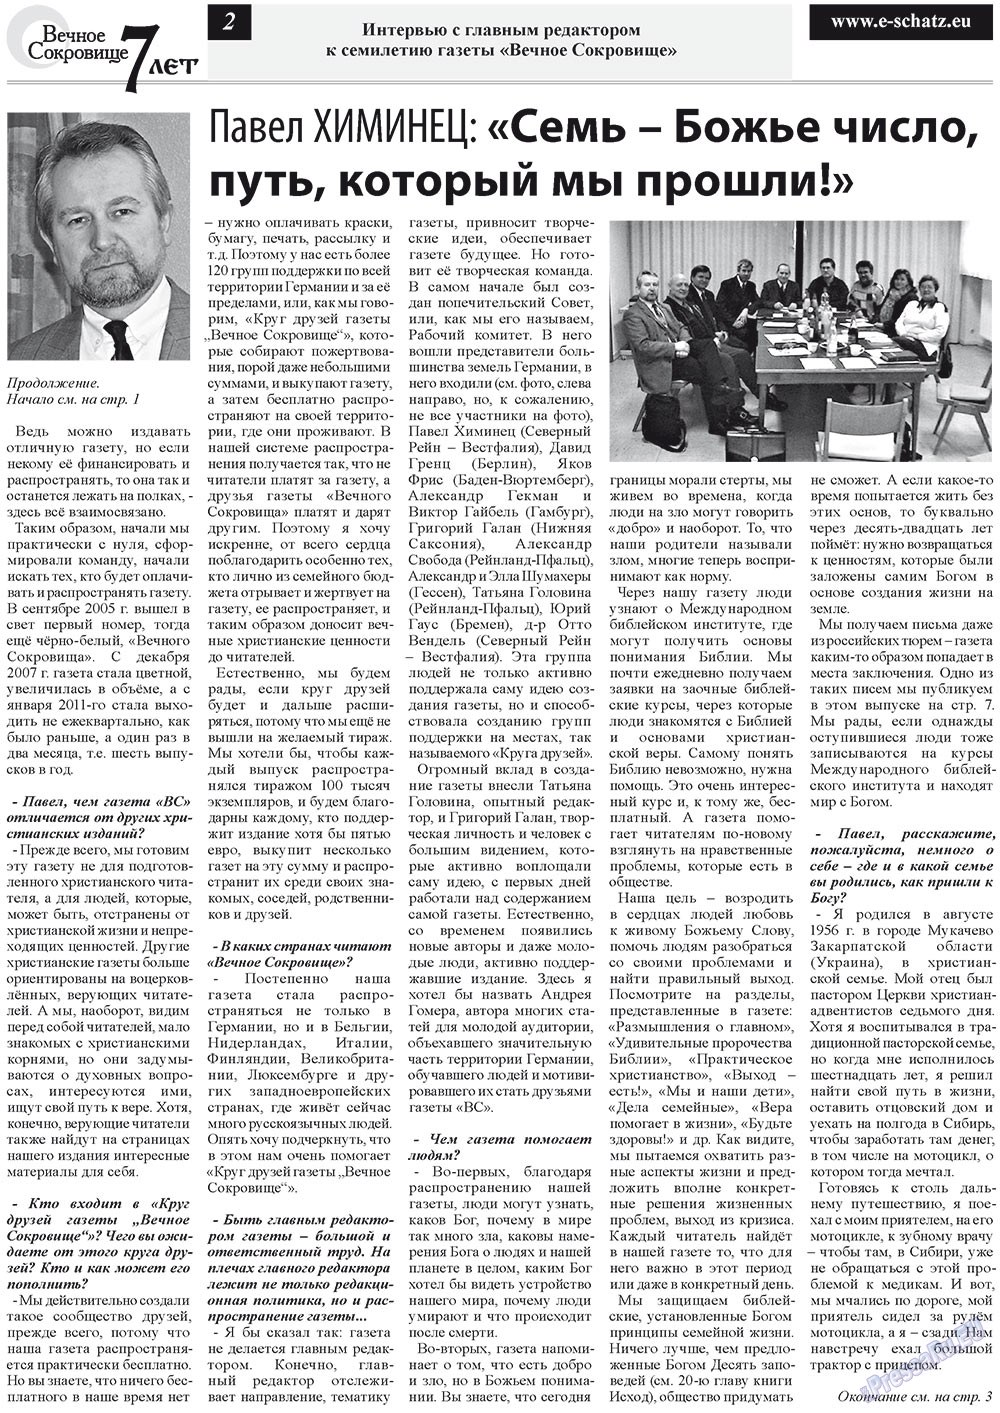 Вечное сокровище, газета. 2012 №5 стр.2